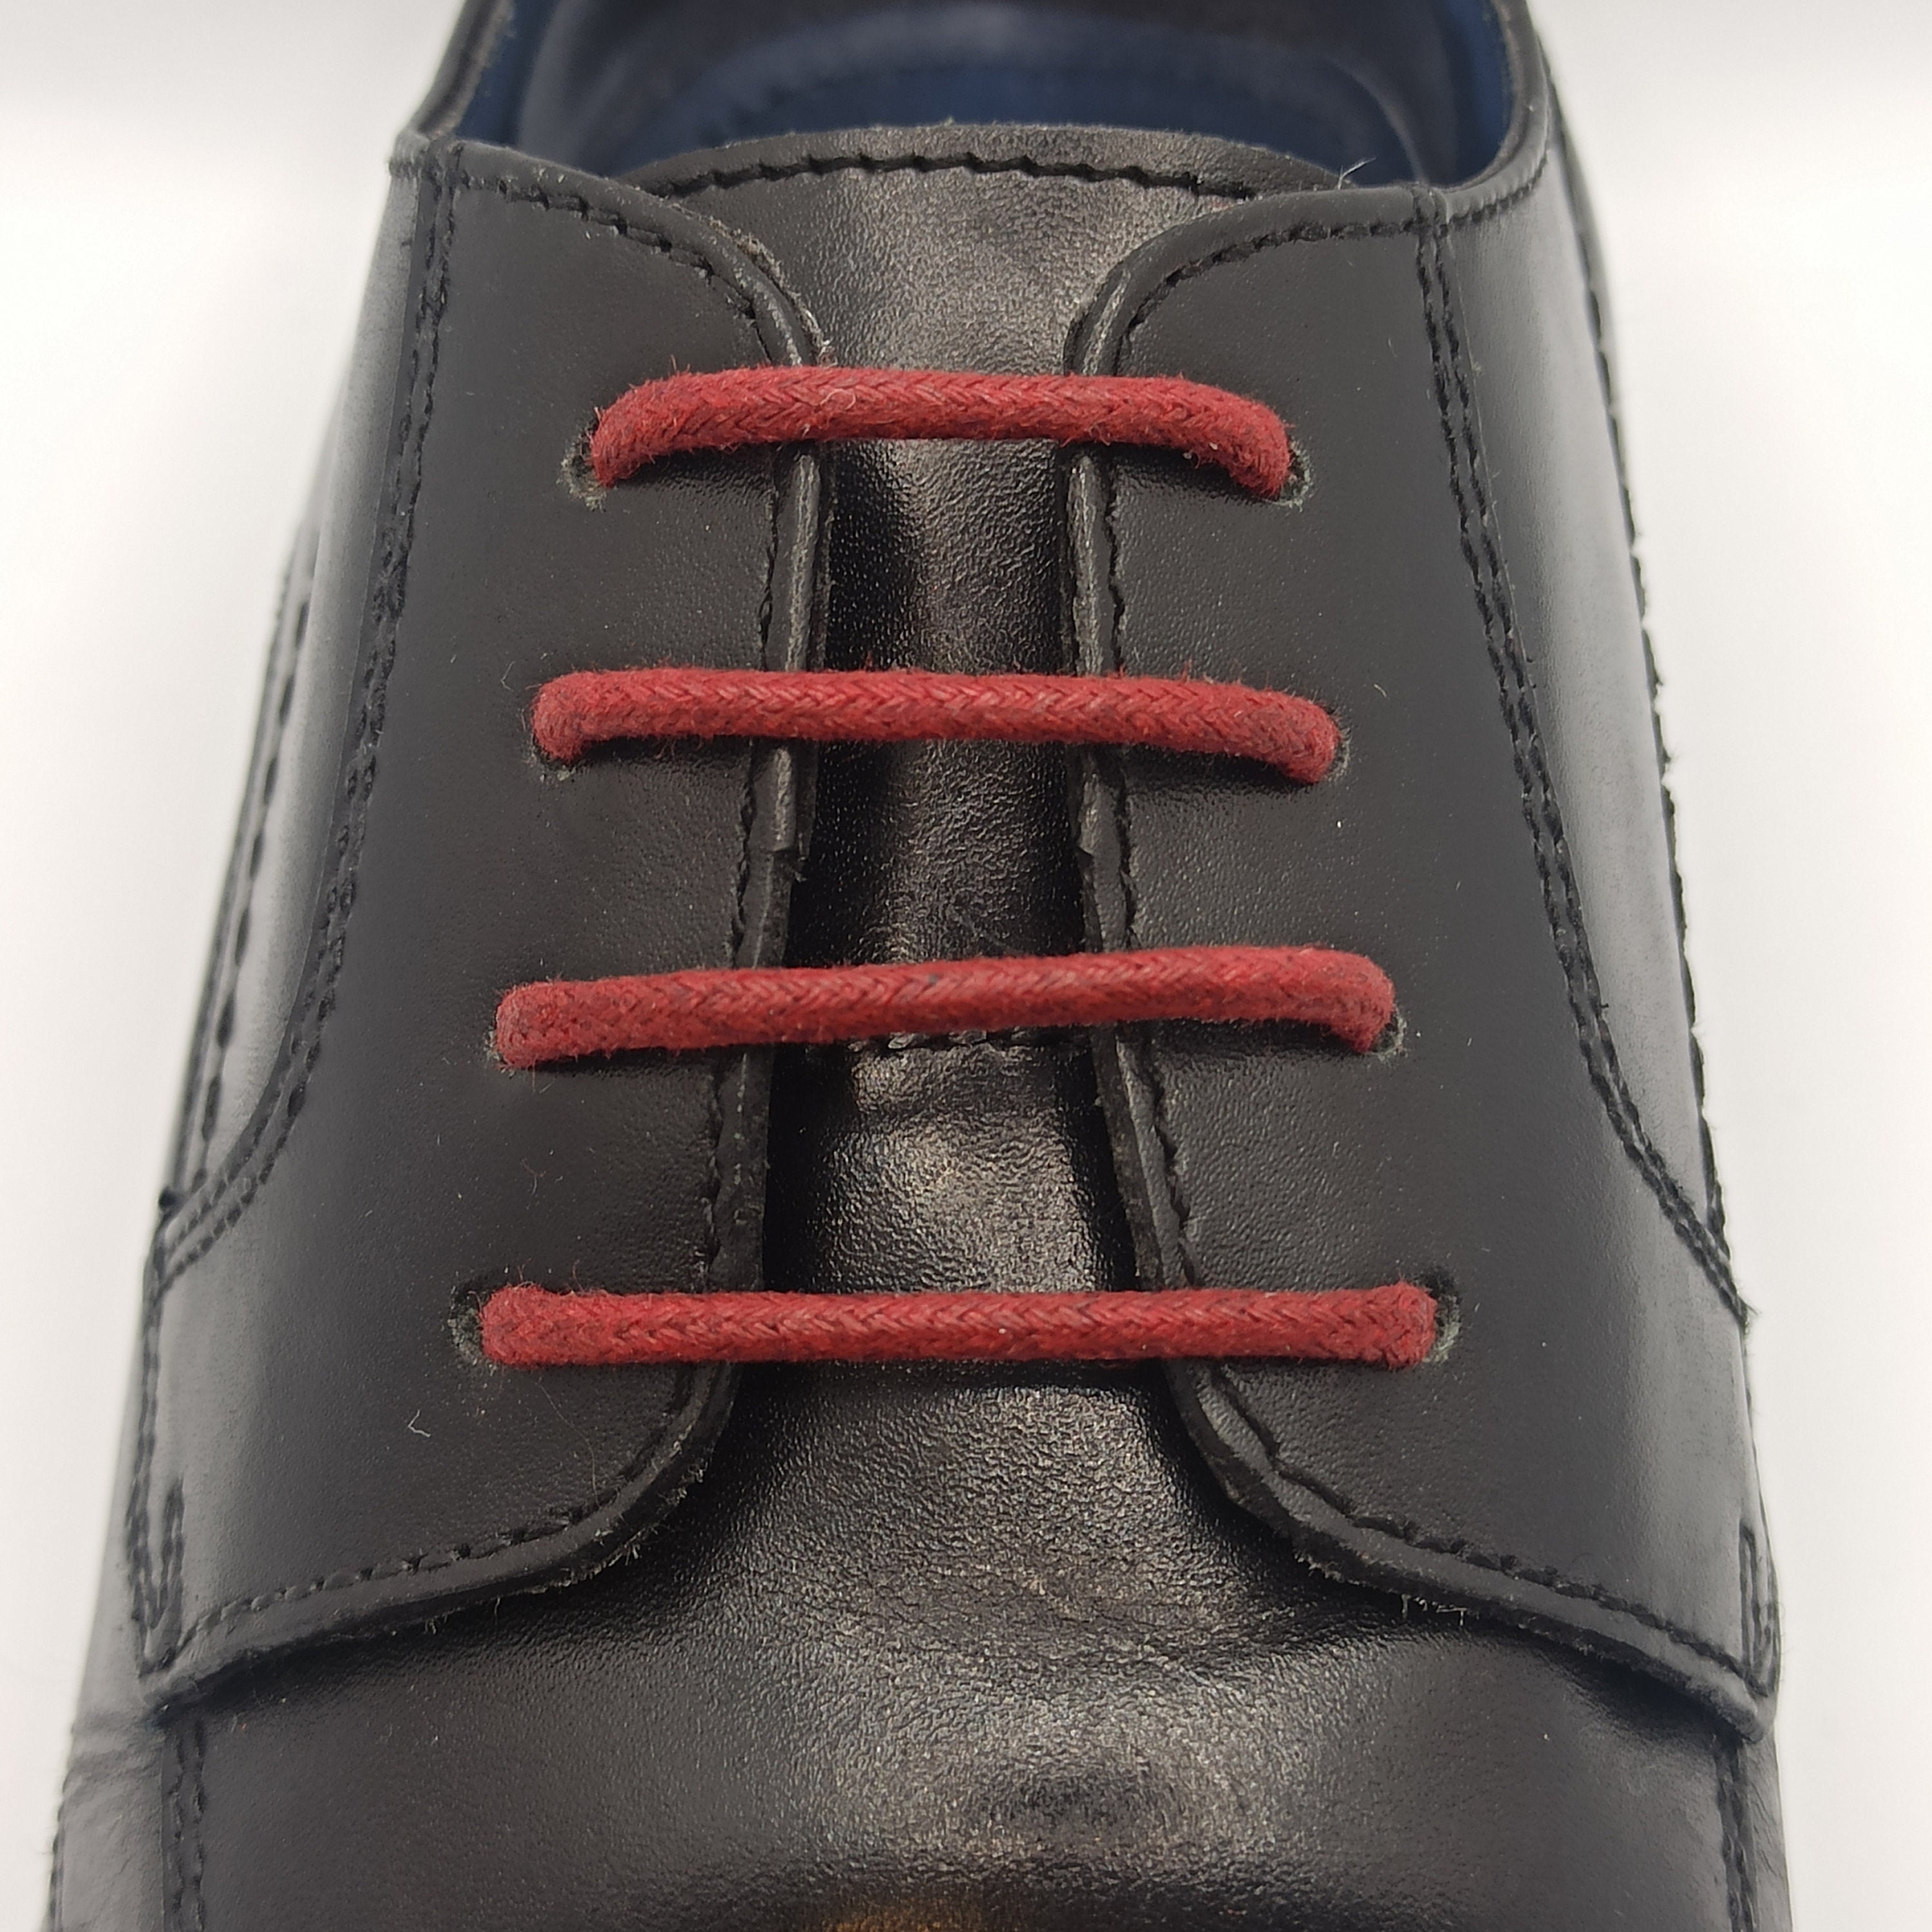 72 x 1/8 Alum Tanned Strong Leather Shoelaces Jaguar Latigo Boot Strings Boat Shoe Laces